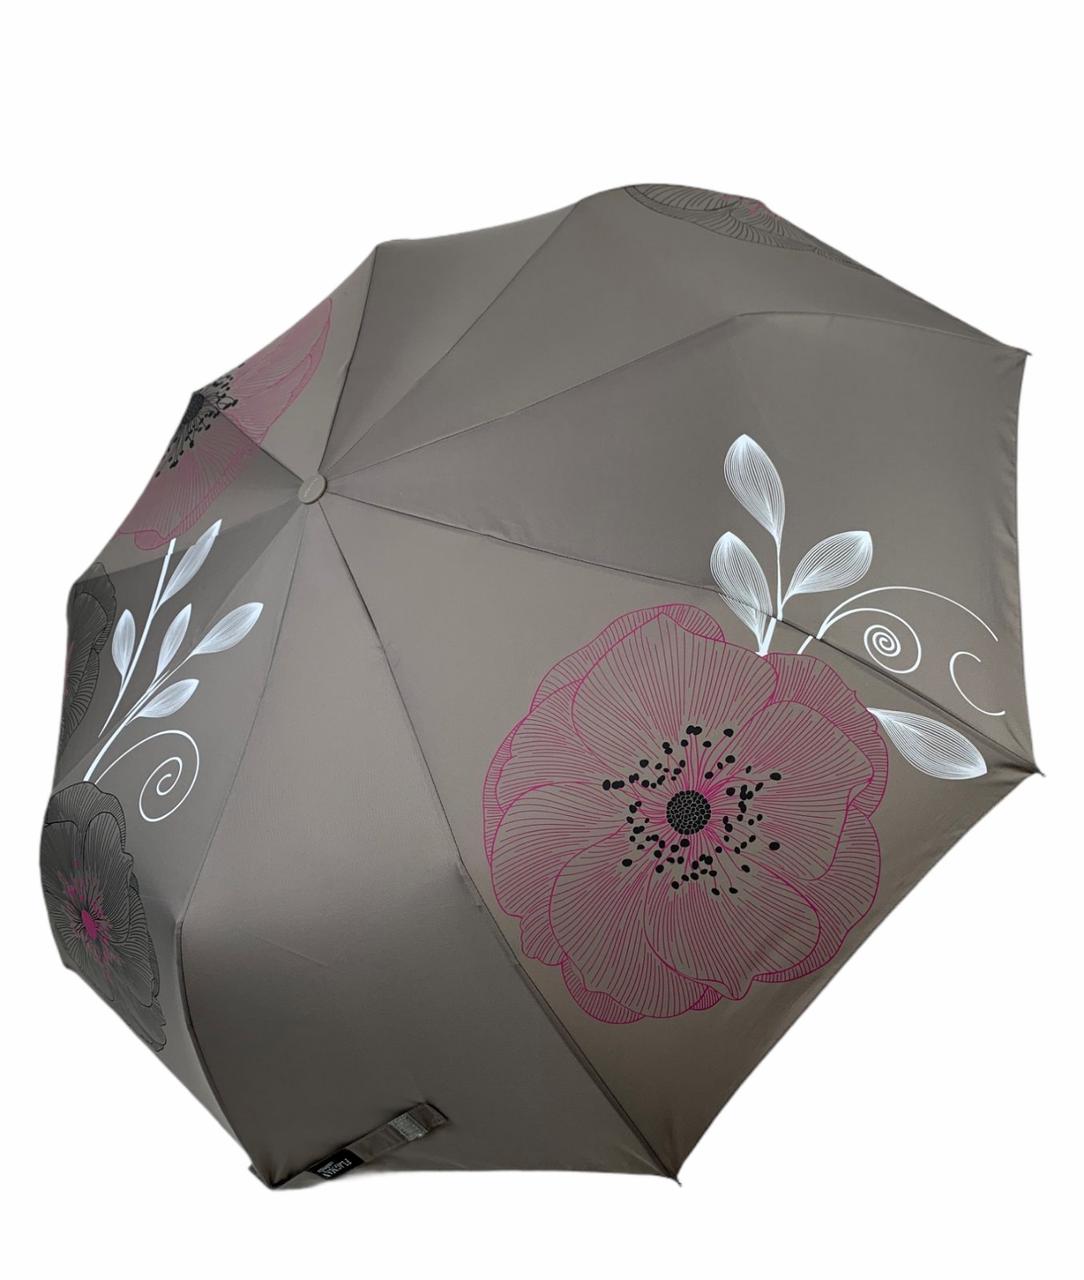 Жіноча складана парасолька-автомат від Flagman-TheBest з принтом квітів, сіра, fl0512-3